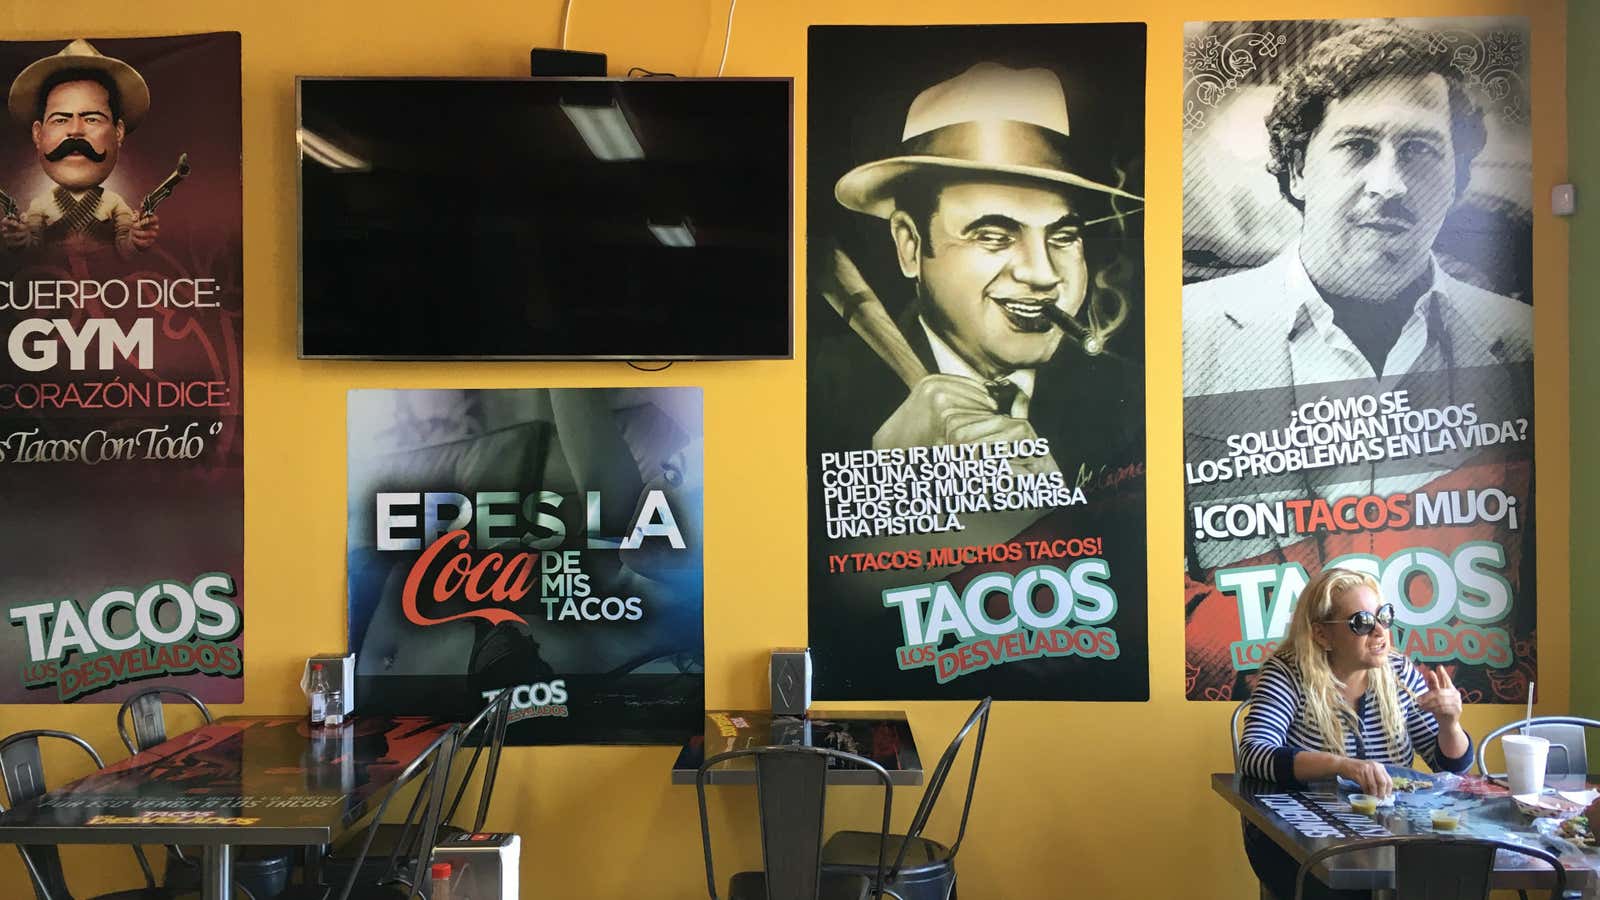 LA’s most wanted (tacos).